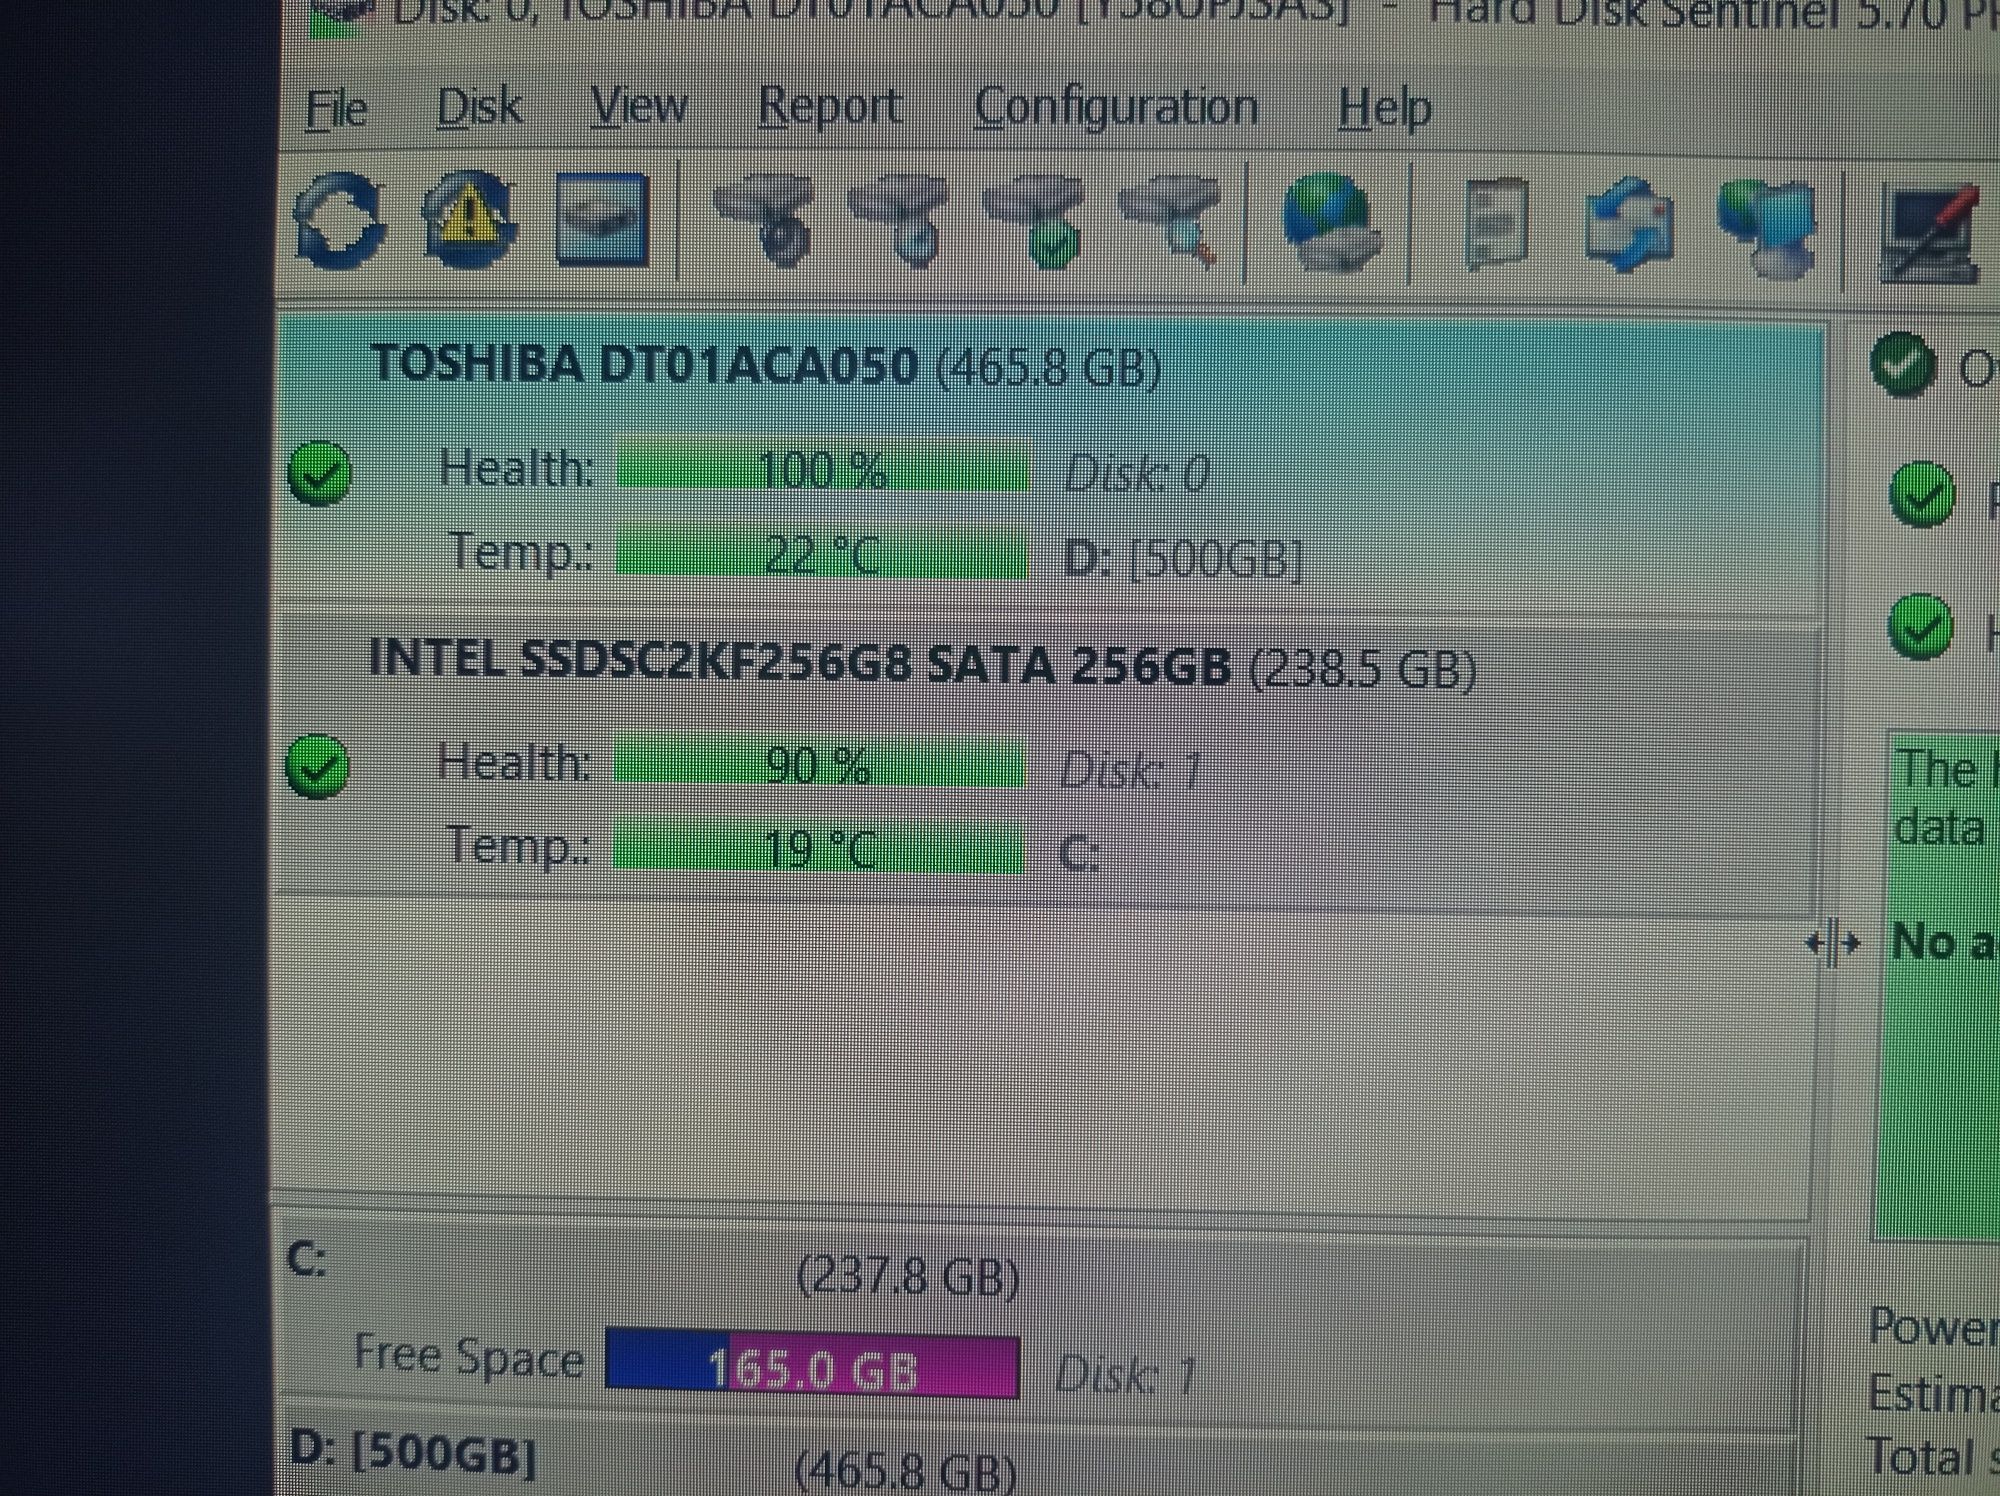 PC i5 6500, 8gb ddr4, rx550 2g, ssd250, hdd1000, wifi